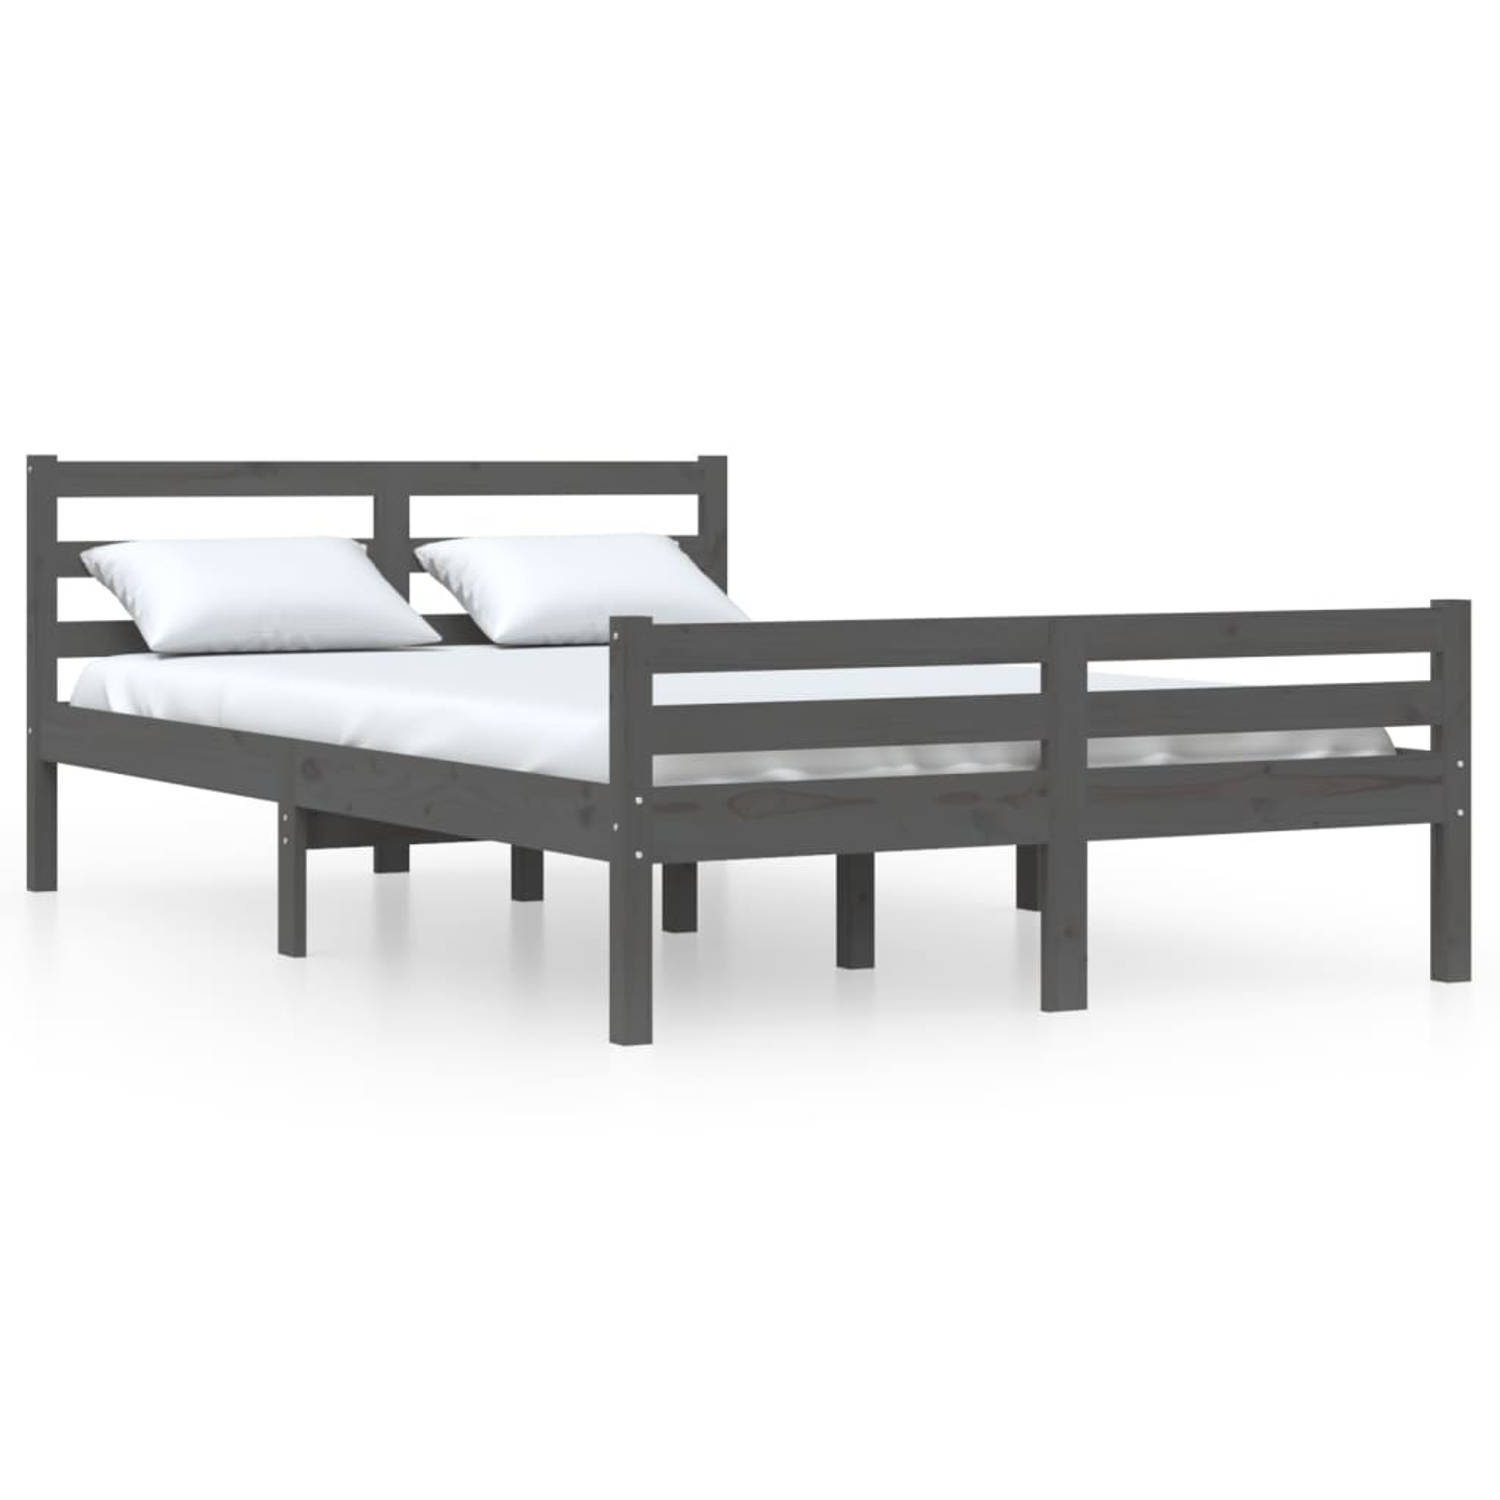 The Living Store Bedframe massief hout grijs 160x200 cm - Bedframe - Bedframes - Bed - Bedbodem - Ledikant - Bed Frame - Massief Houten Bedframe - Slaapmeubel - Tweepersoonsbed - B